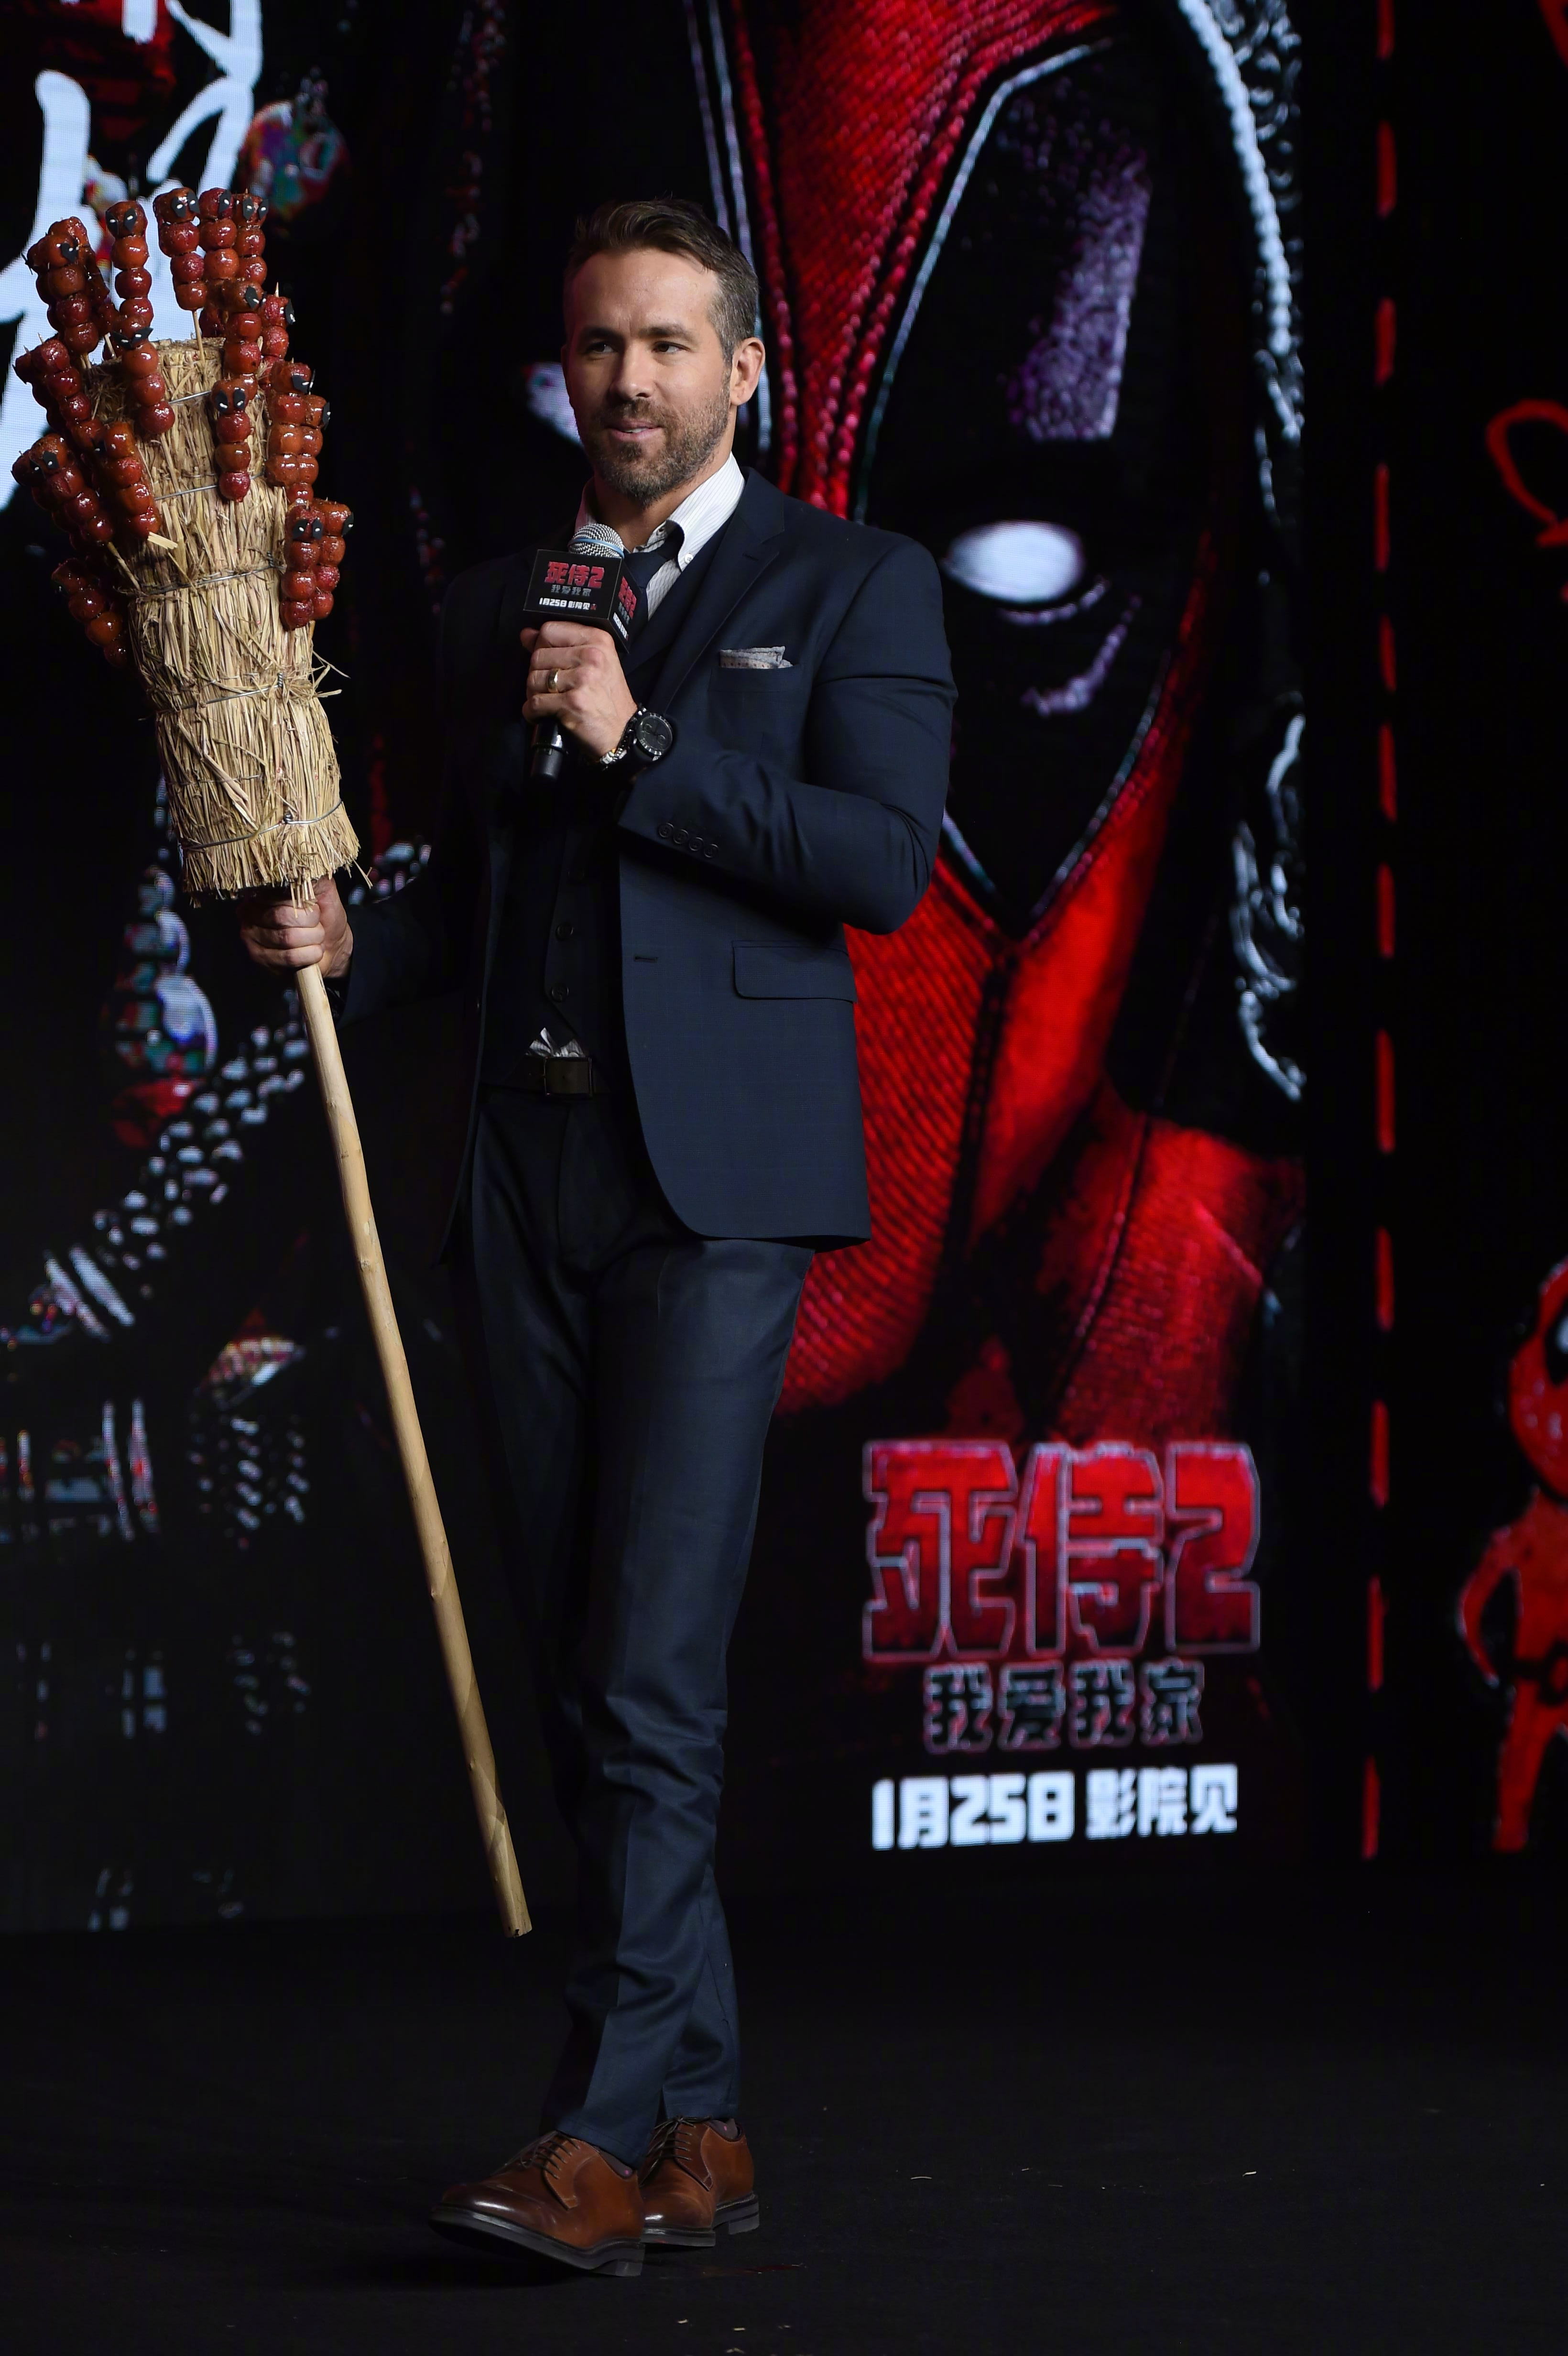 《死侍2》北京发布会现场照 确认死侍3已在开发中